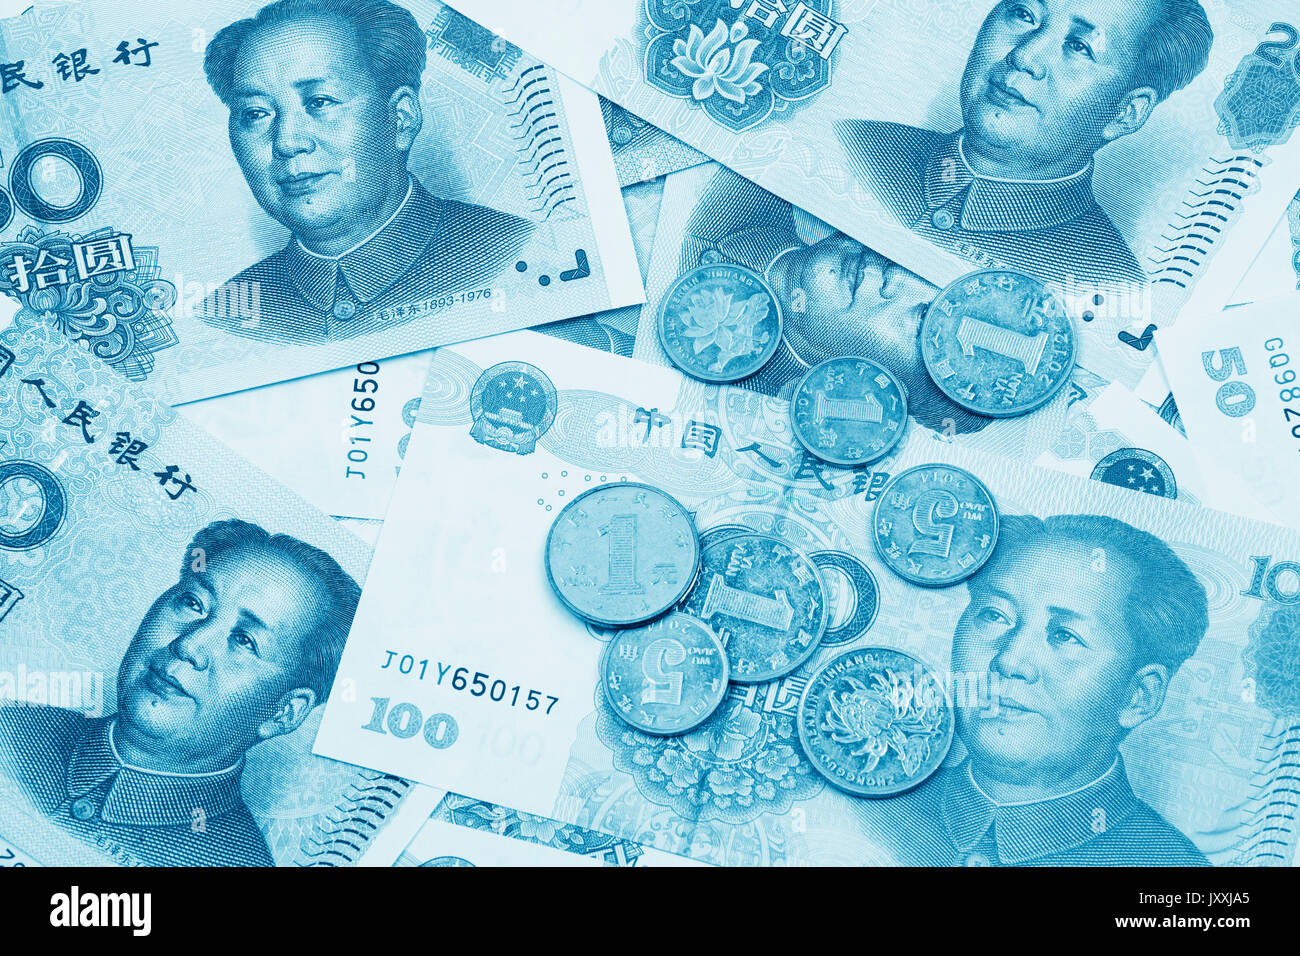 Collage d'arrière-plan de RMB chinois Yuan ou billets de banque et des pièces en euros avec le président Mao sur l'avant de chaque projet de loi Banque D'Images